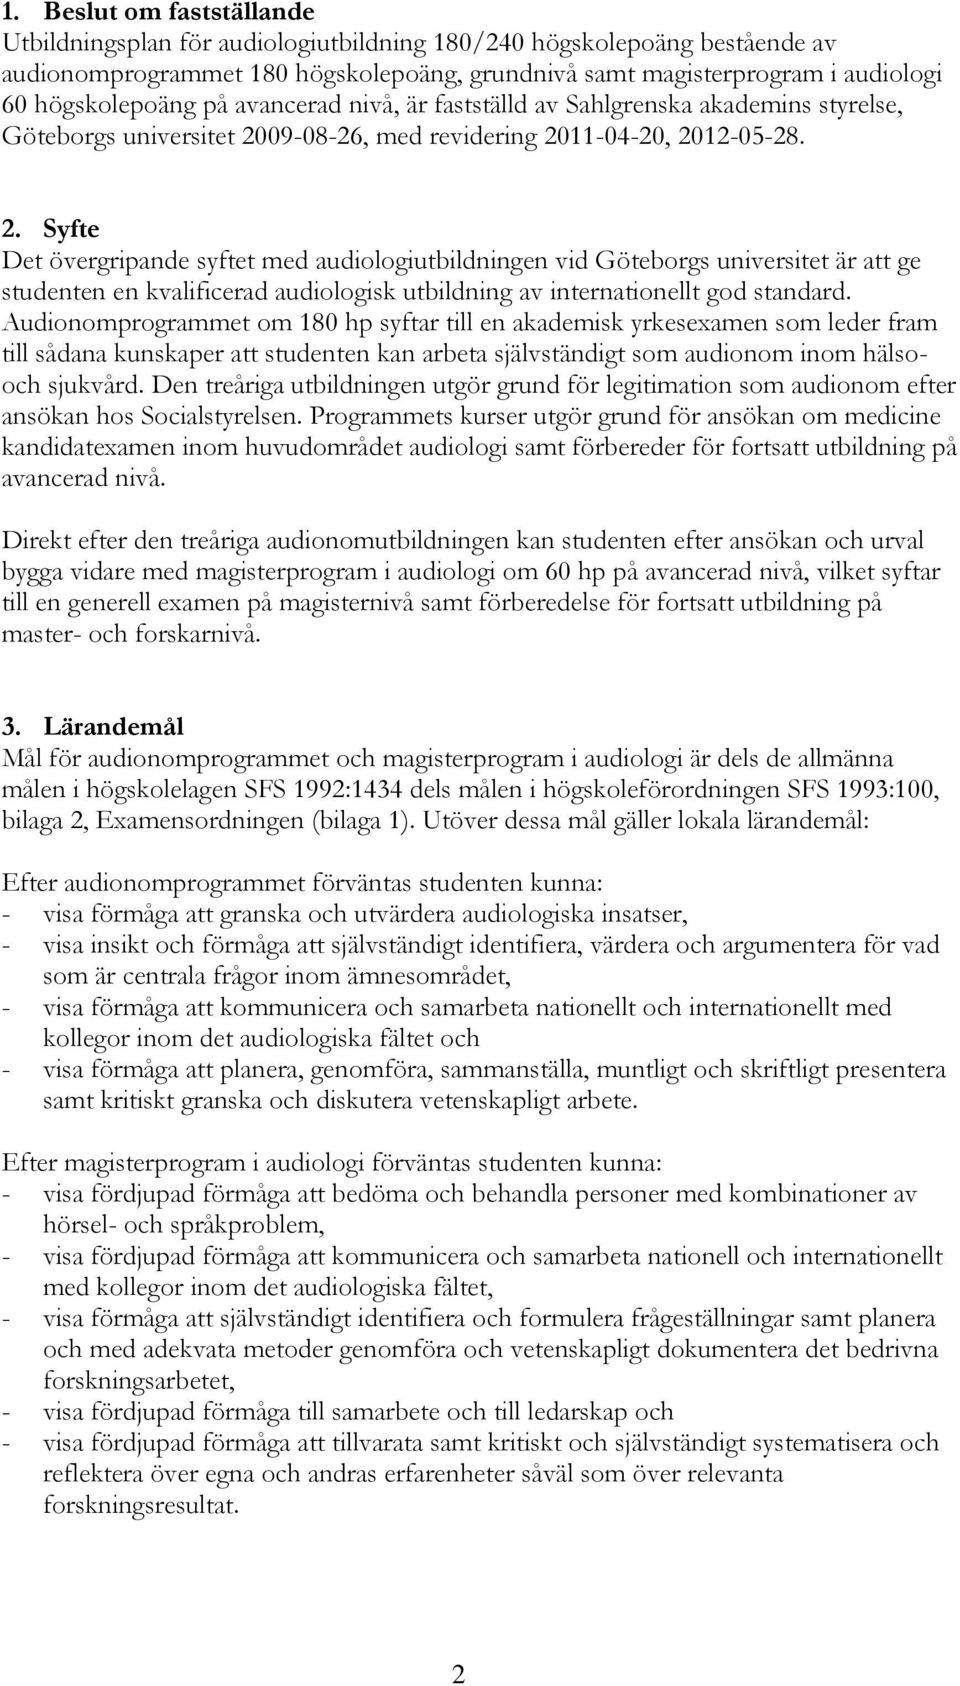 09-08-2, med revidering 2011-04-20, 2012-05-28. 2. Syfte Det övergripande syftet med audiologiutbildningen vid Göteborgs universitet är att ge studenten en kvalificerad audiologisk utbildning av internationellt god standard.